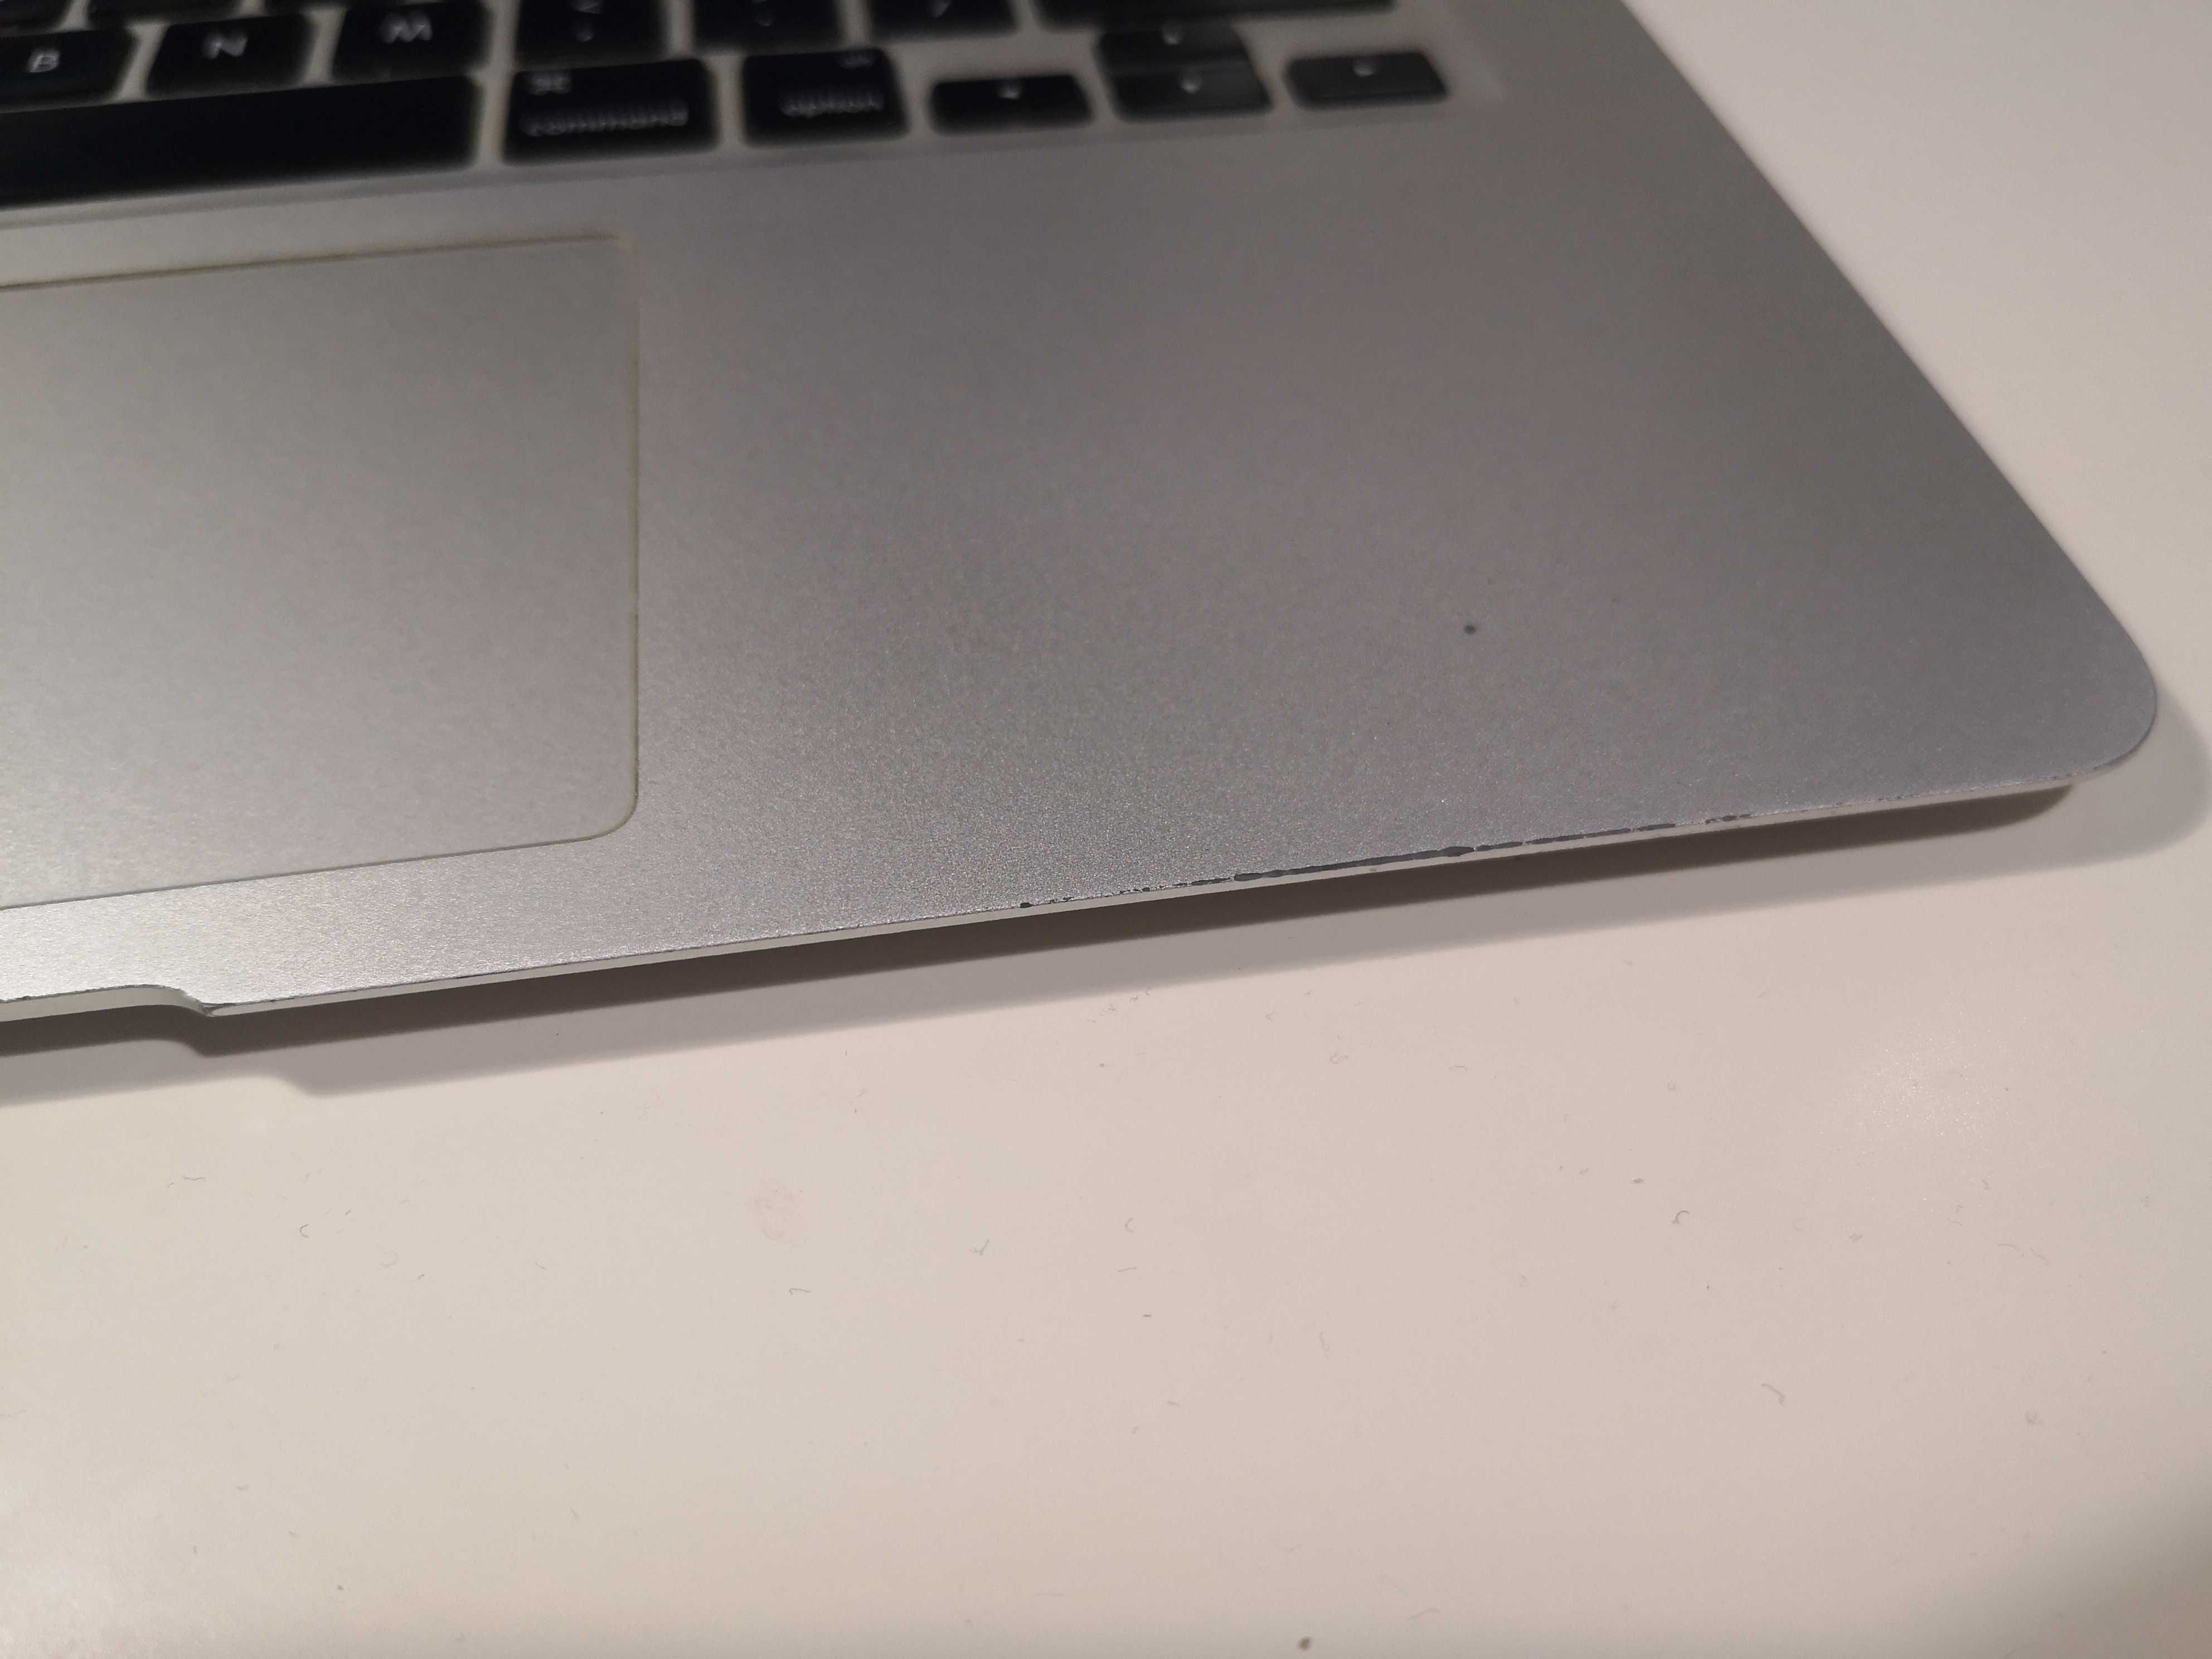 MacBook Air 2013 1.7 GHz Dual-Core Intel Core i7, 8GB RAM, 128GB